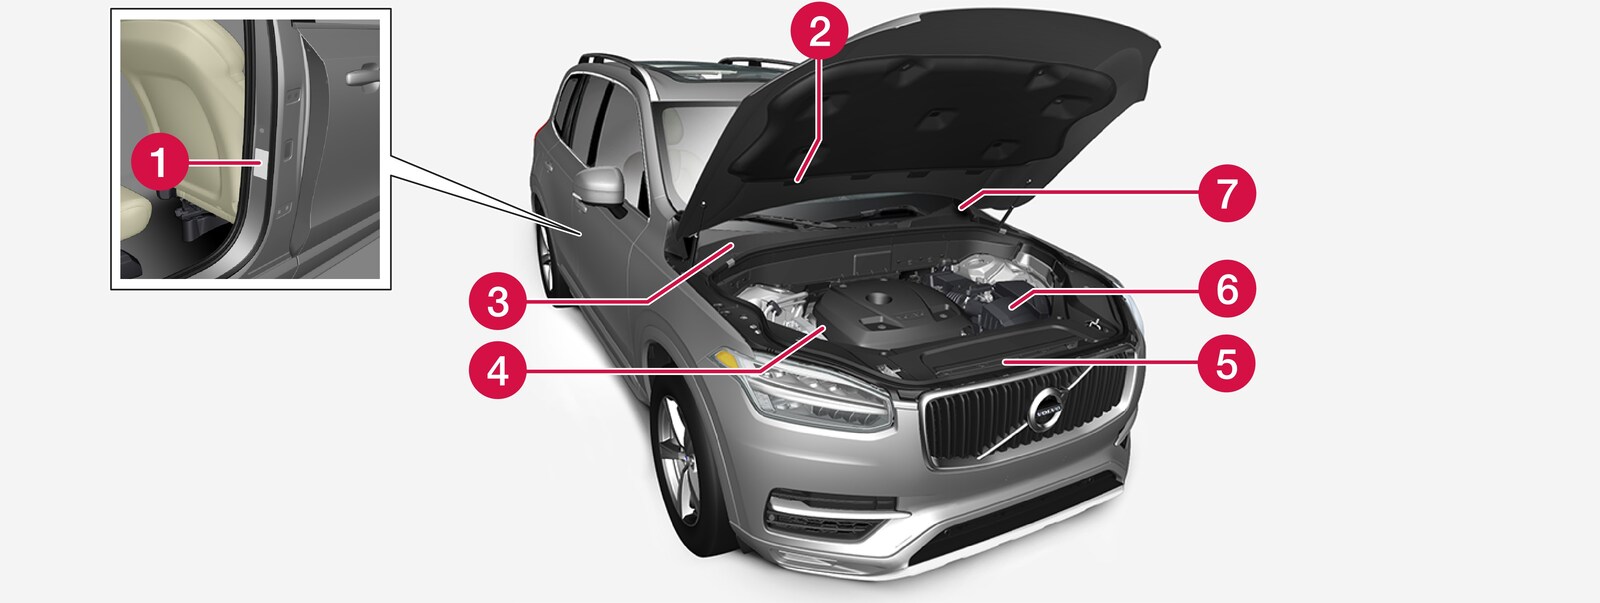 Wanneer u contact opneemt met uw erkende Volvo-werkplaats of vervangende onderdelen of accessoires wilt bestellen, kan het handig zijn om de typeaanduiding, het chassisnummer en het motornummer bij de hand te hebben.